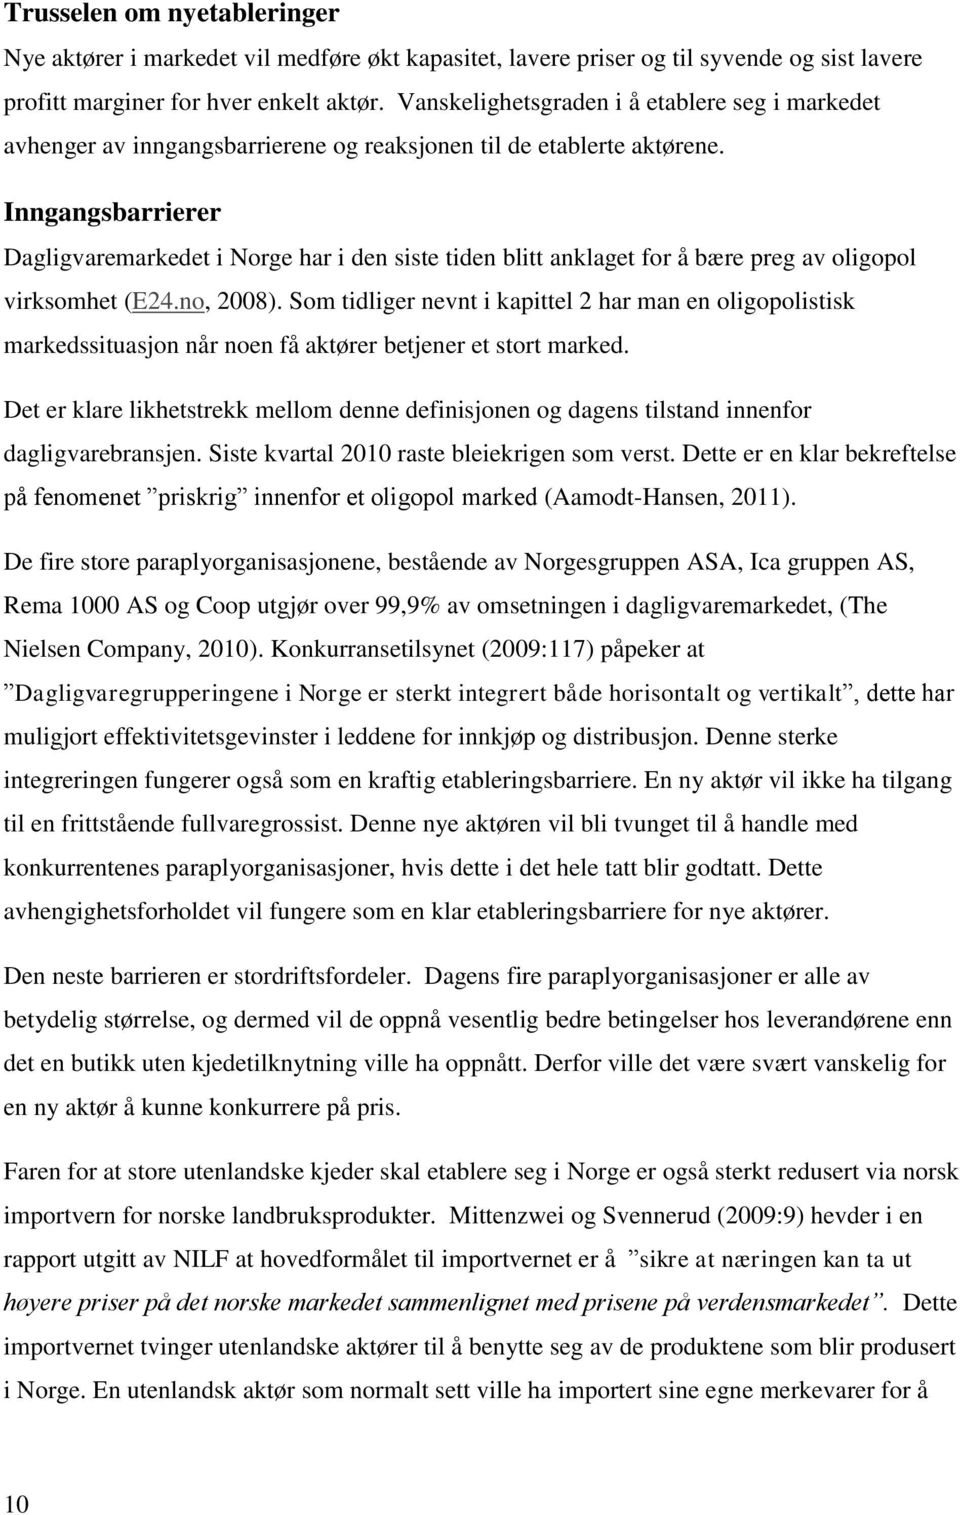 Inngangsbarrierer Dagligvaremarkedet i Norge har i den siste tiden blitt anklaget for å bære preg av oligopol virksomhet (E24.no, 2008).